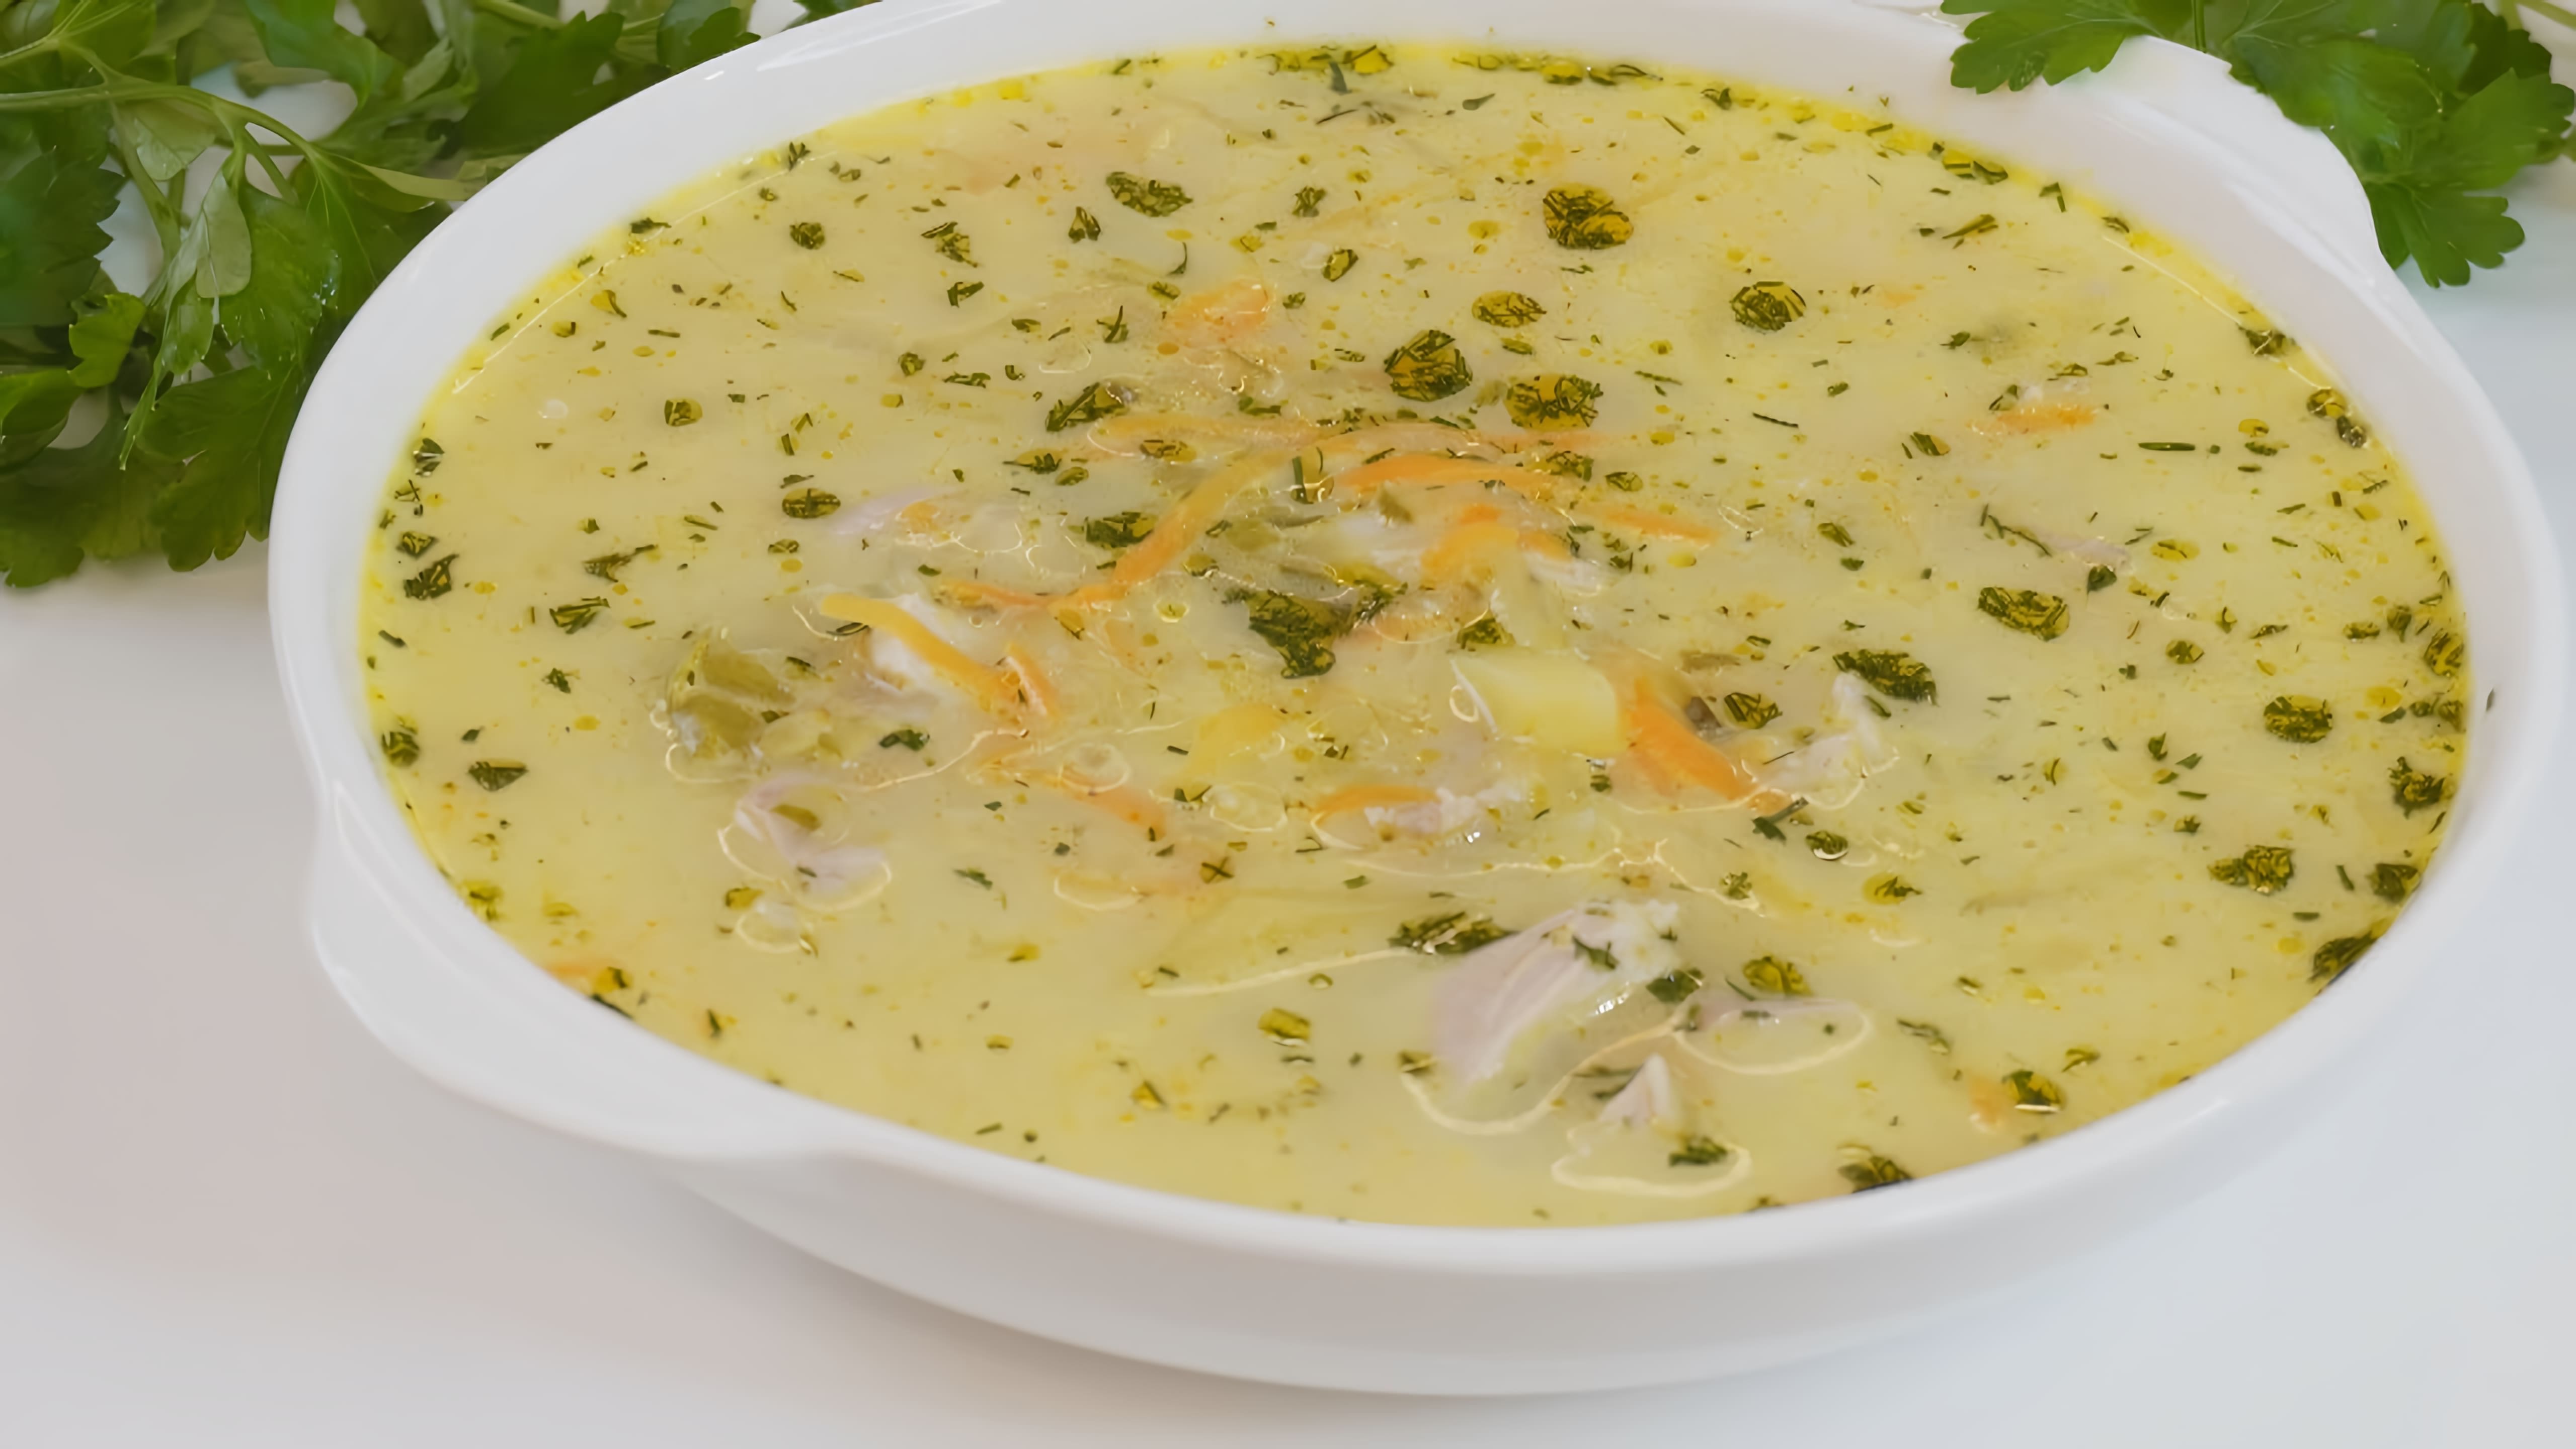 В этом видео демонстрируется рецепт приготовления супа "Бархатный рассольник"